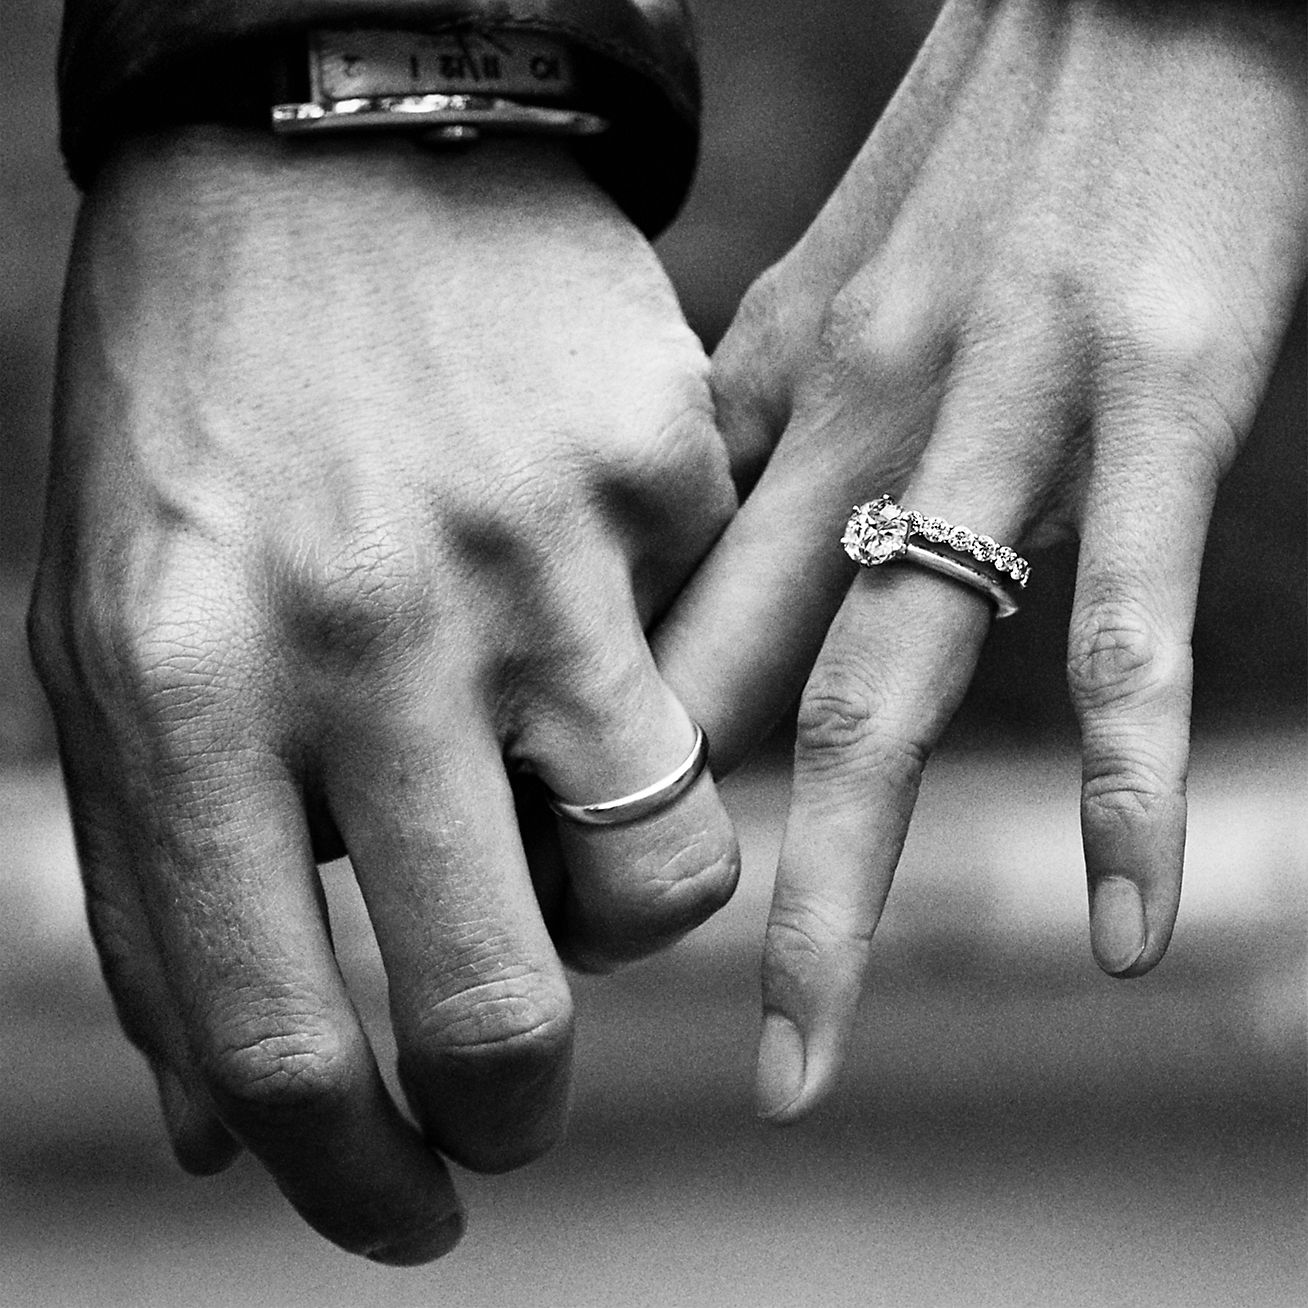 tiffany embrace engagement ring